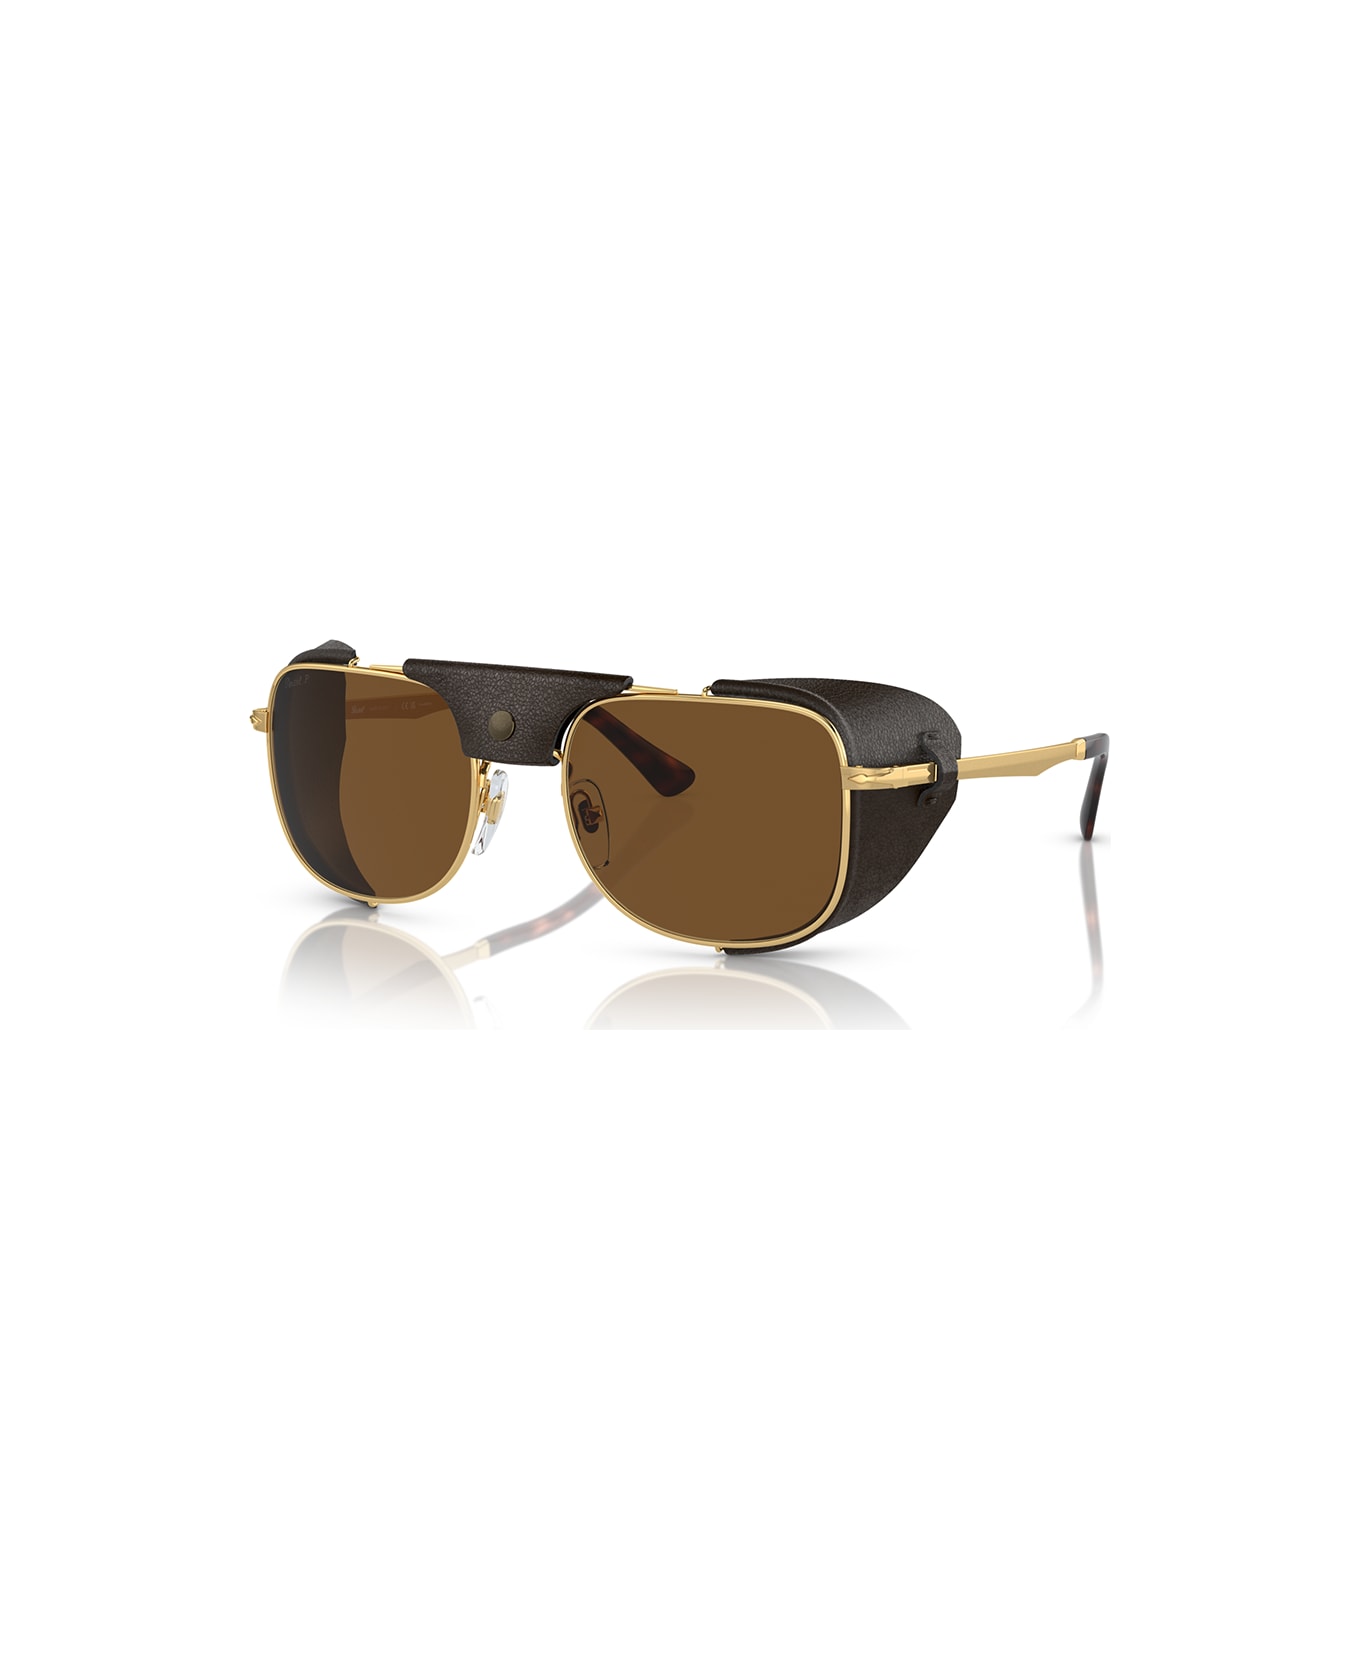 Persol Sunglasses - Oro/Marrone